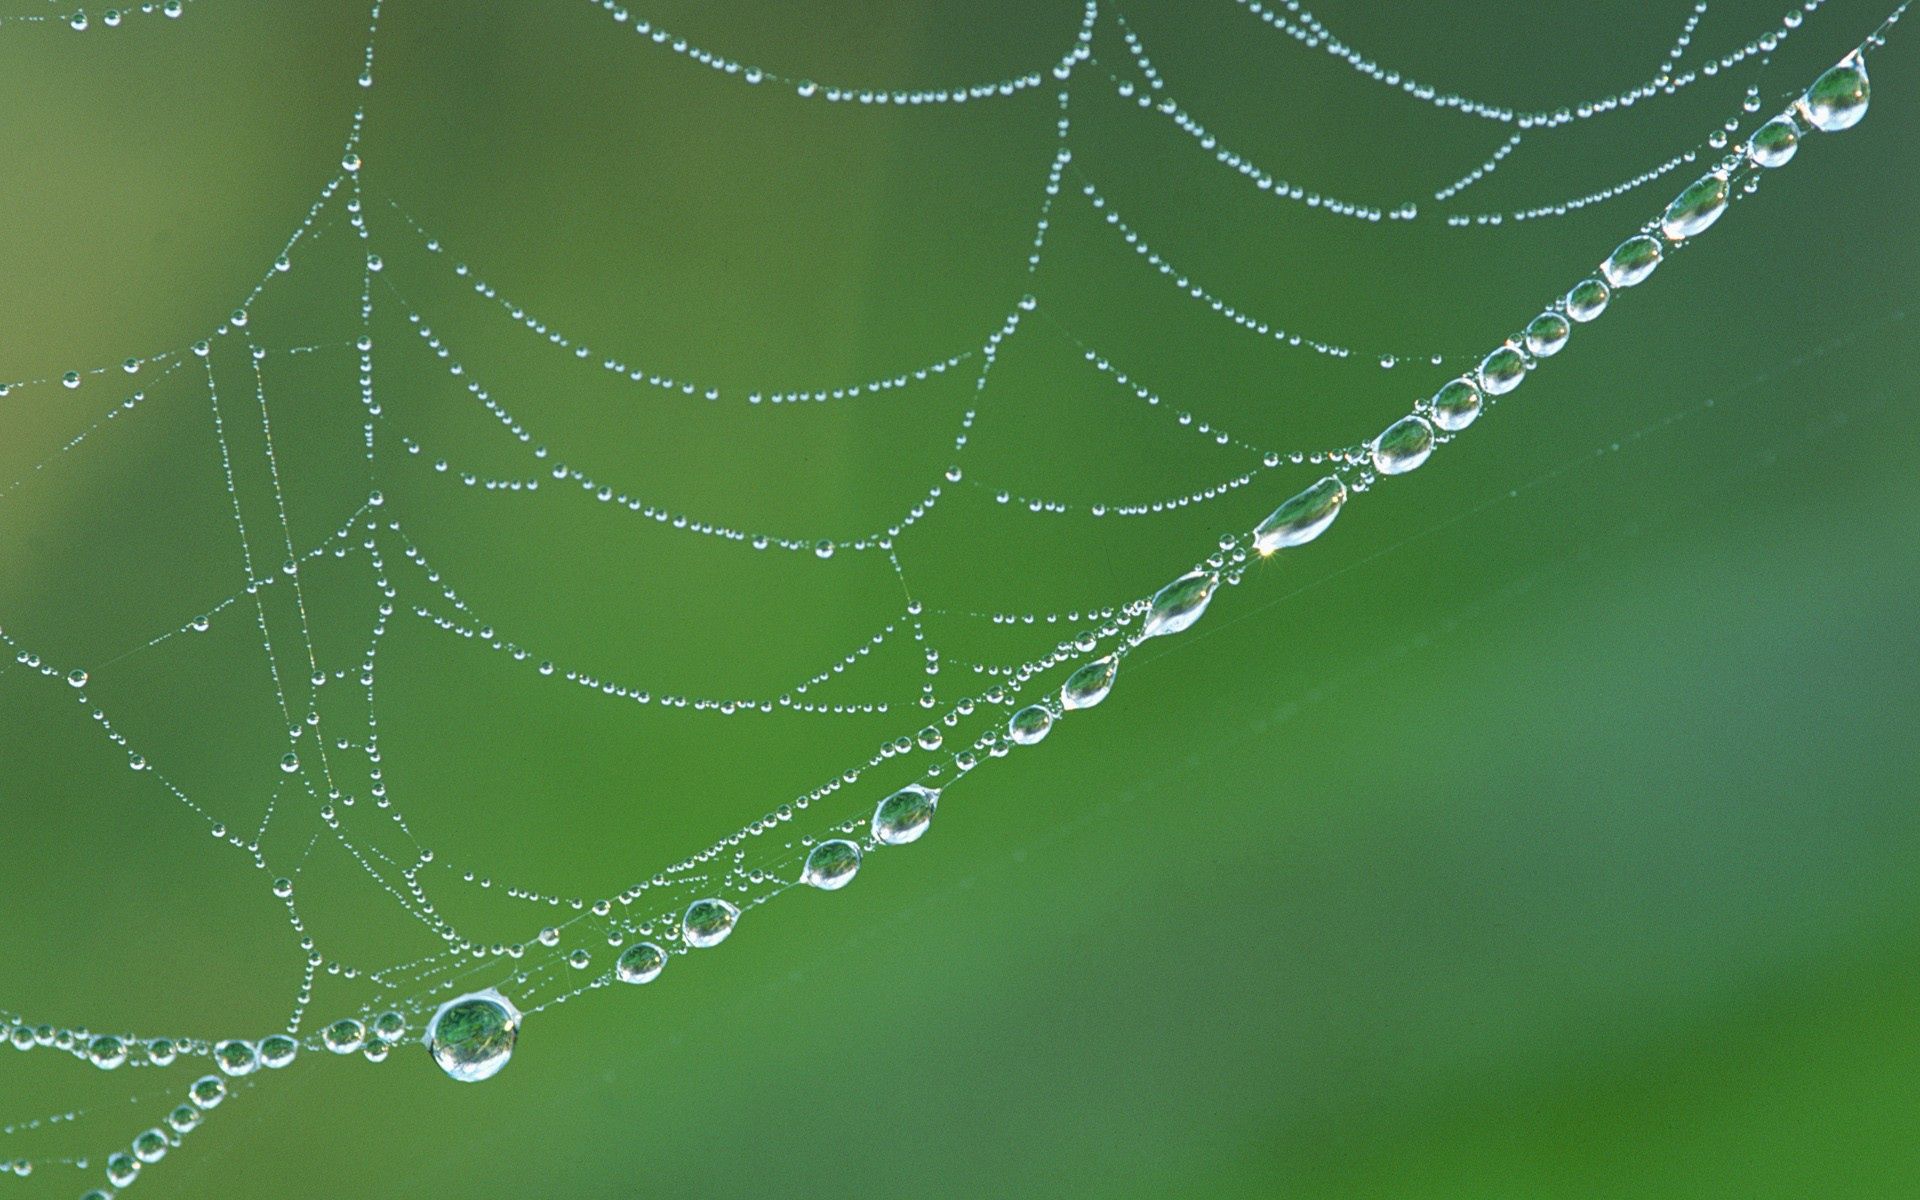 web, drops, macro, wet, dew, humid